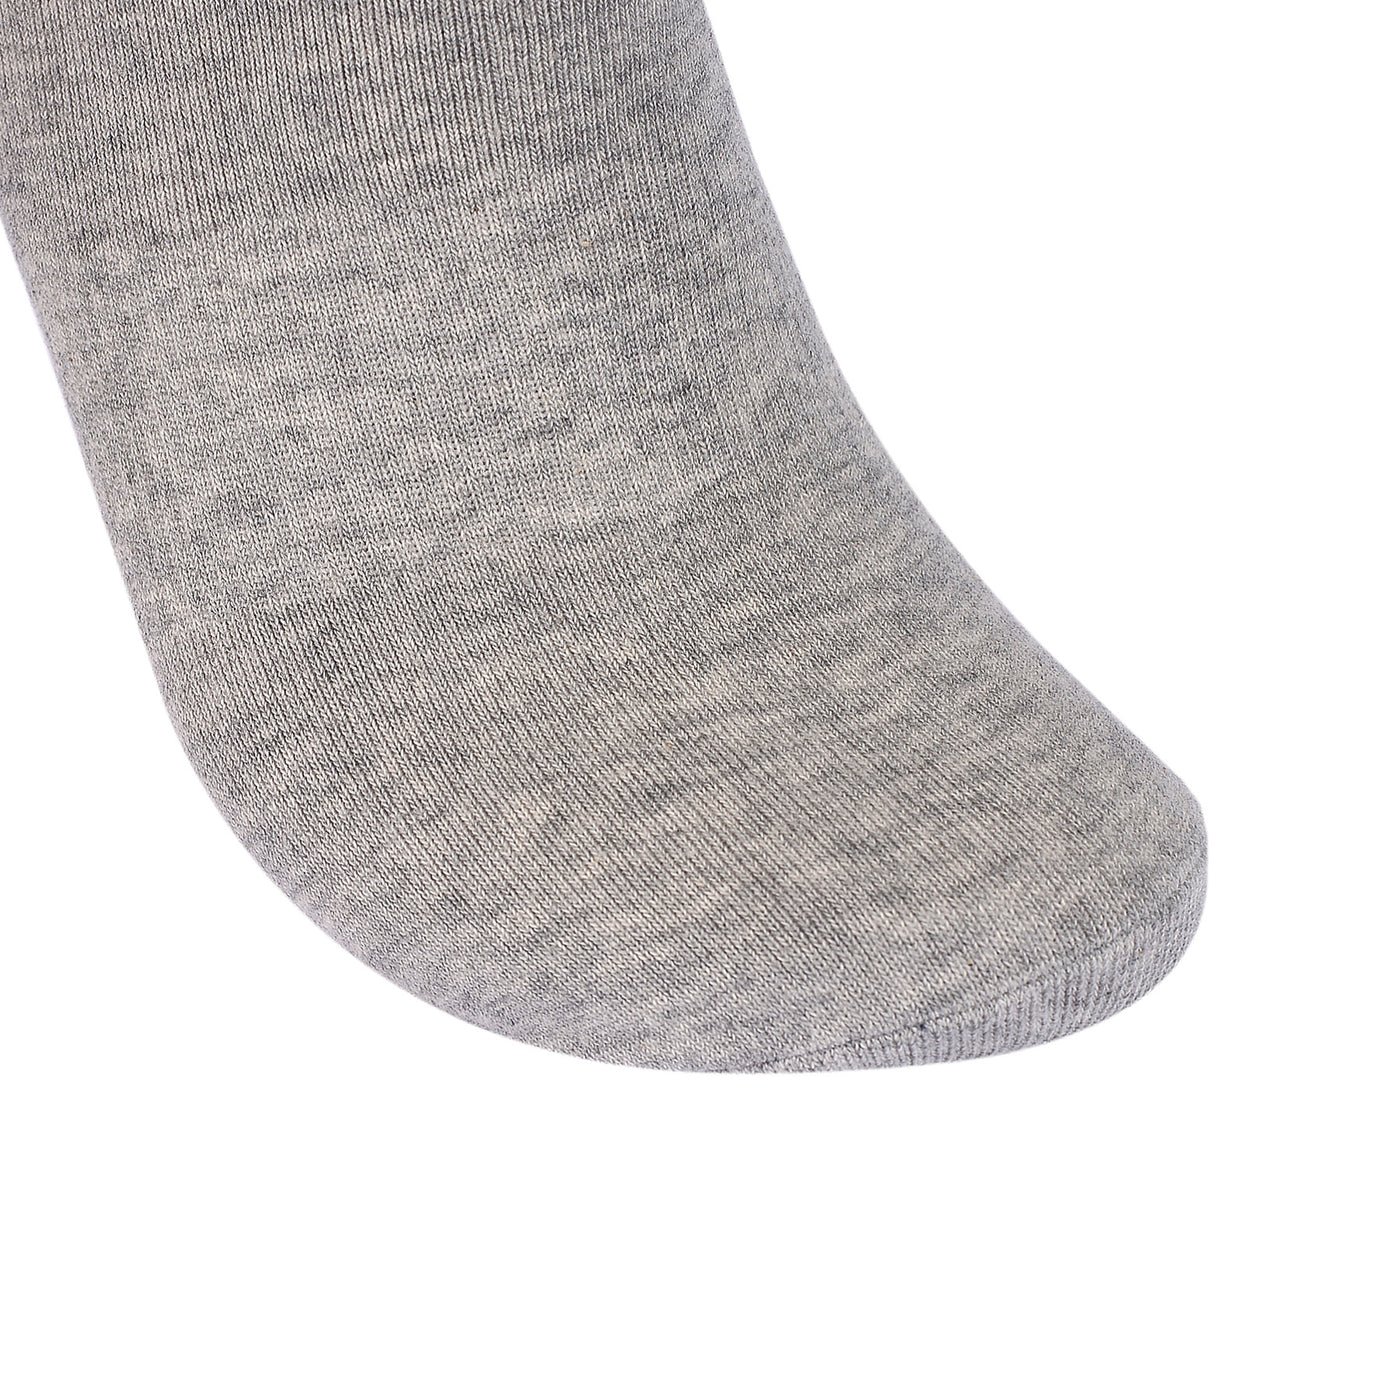 Laulax 6 paires de chaussettes d'entraînement pour soutien de la voûte plantaire en coton peigné fin, gris, taille UK 12-14/Europ 47-49